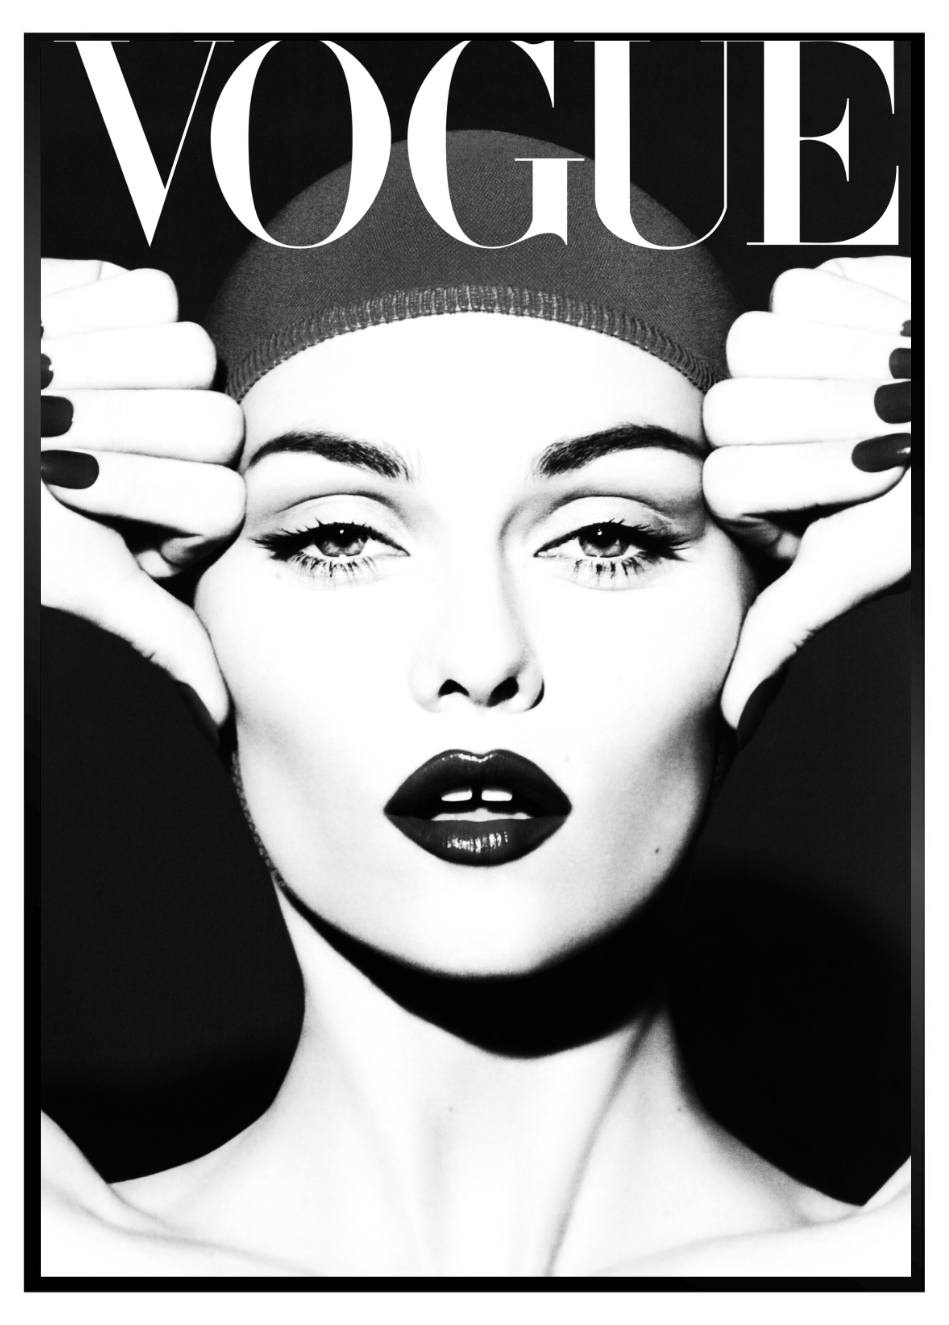  Affiche Vogue  Vintage Vogue  Covers le best of des 